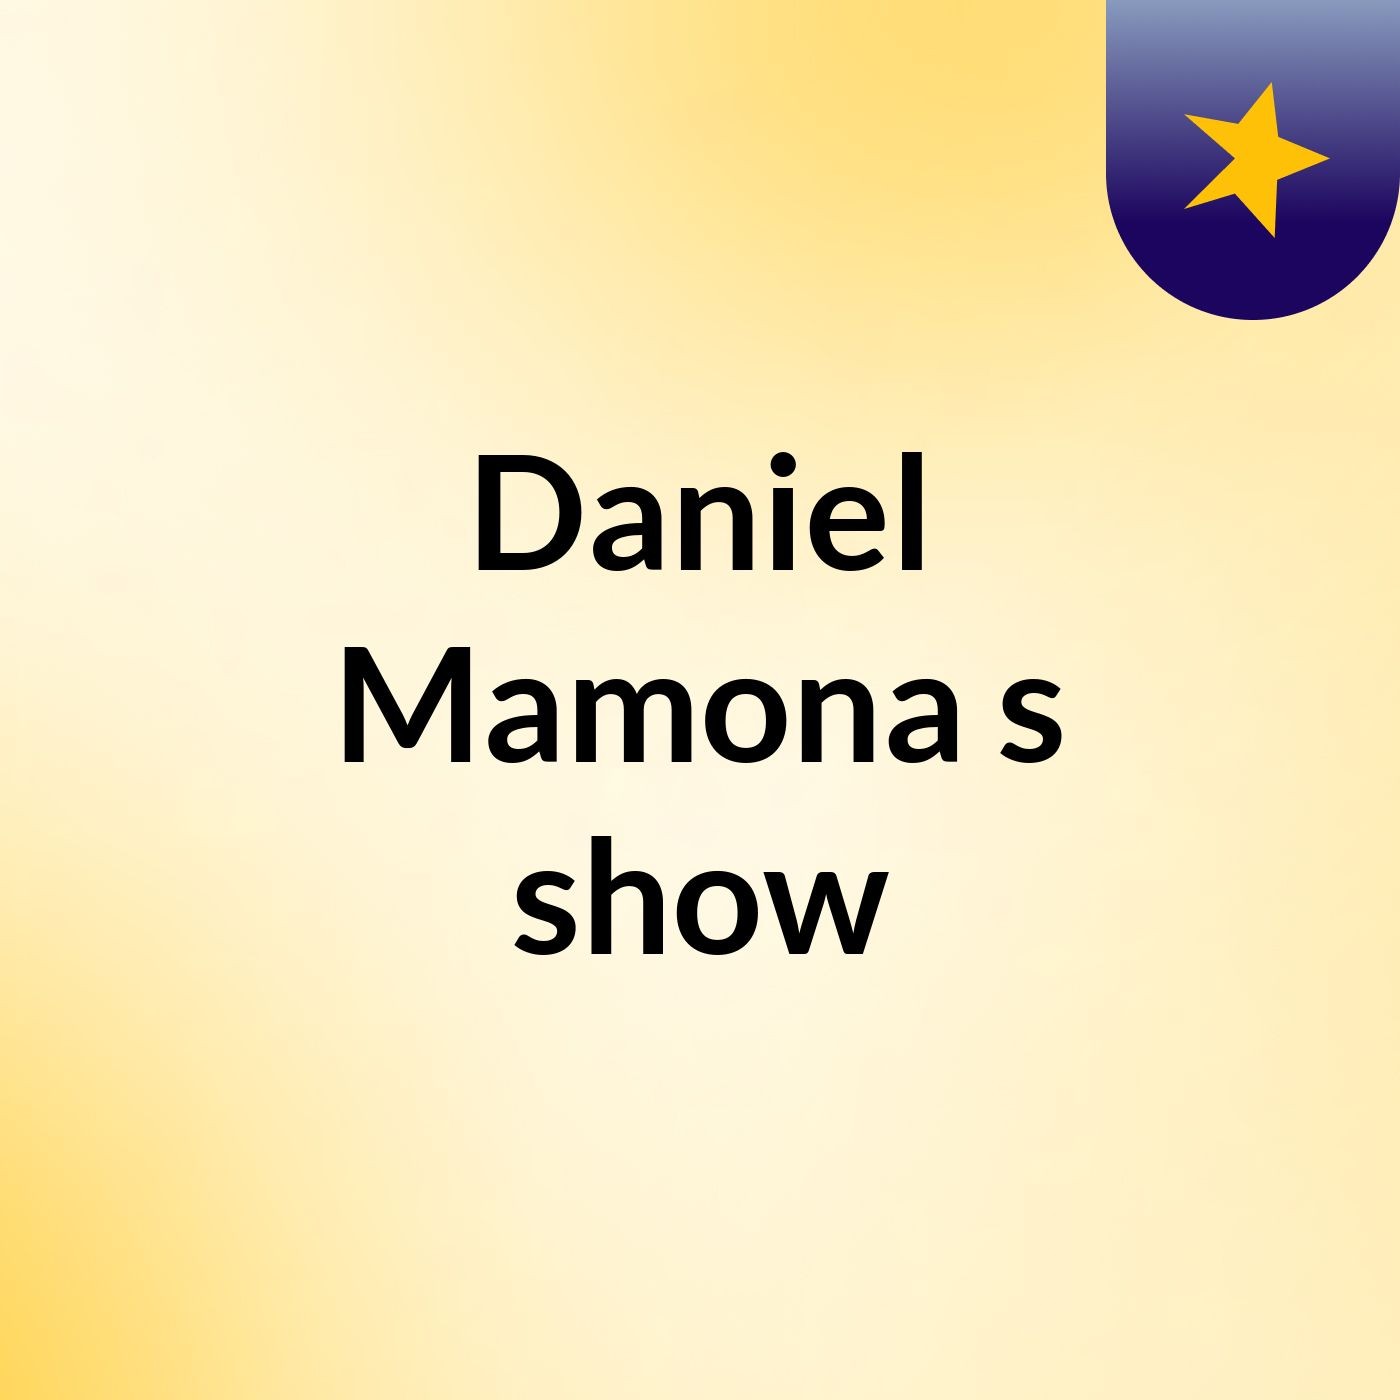 Daniel Mamona's show